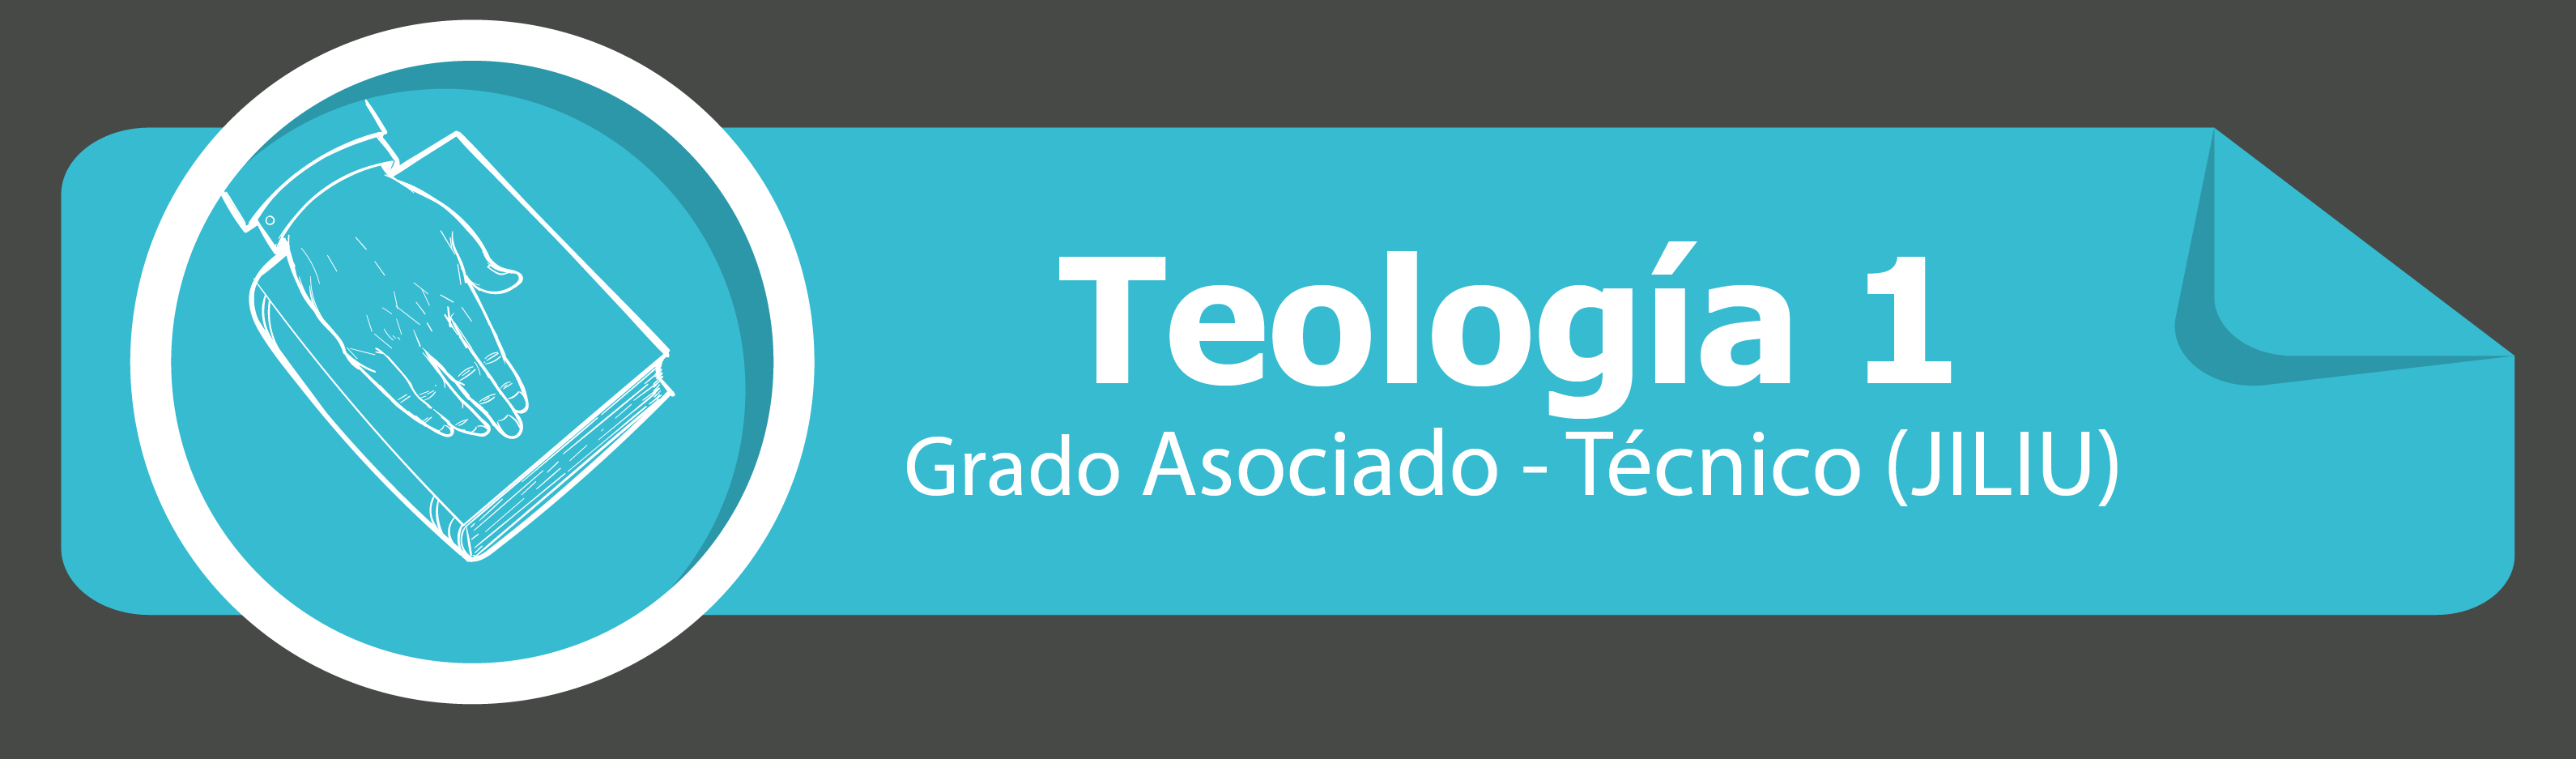 Teología 1